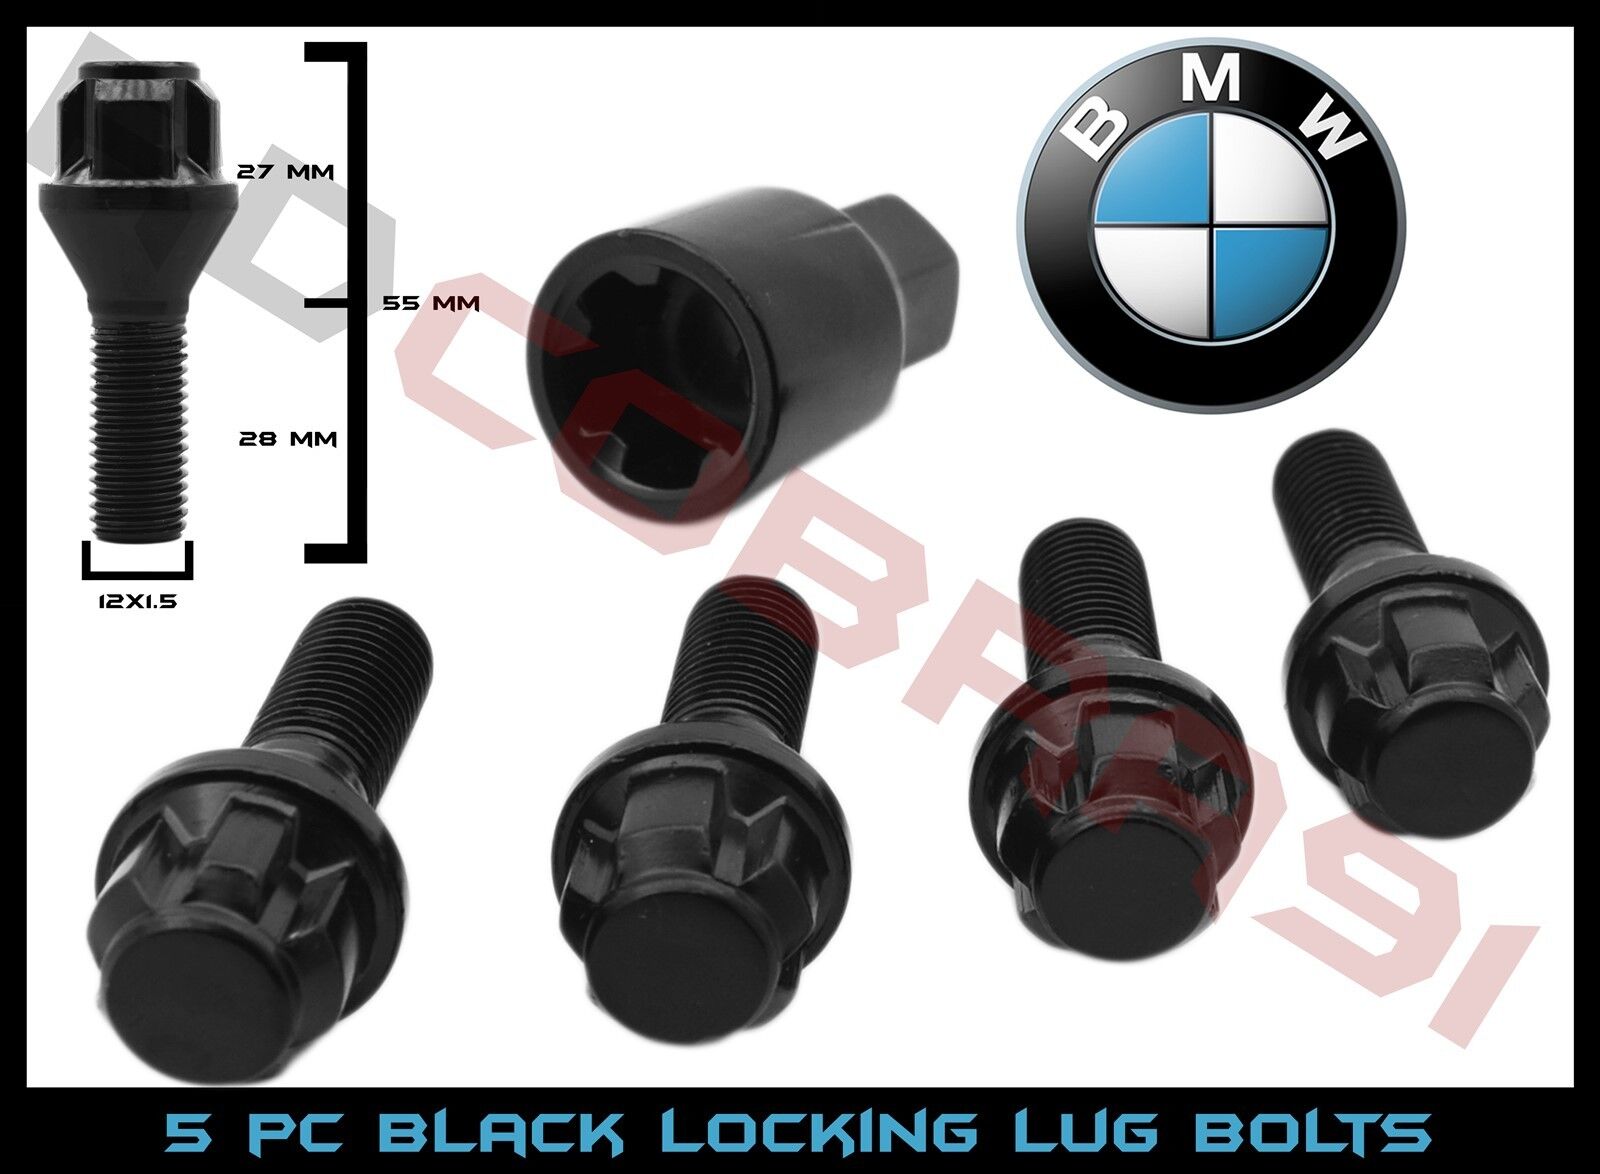 5 Pc Black BMW 12x1.5 Locking Bolts Lock Steel 28mm Stock OEM Shank Lug Bolts